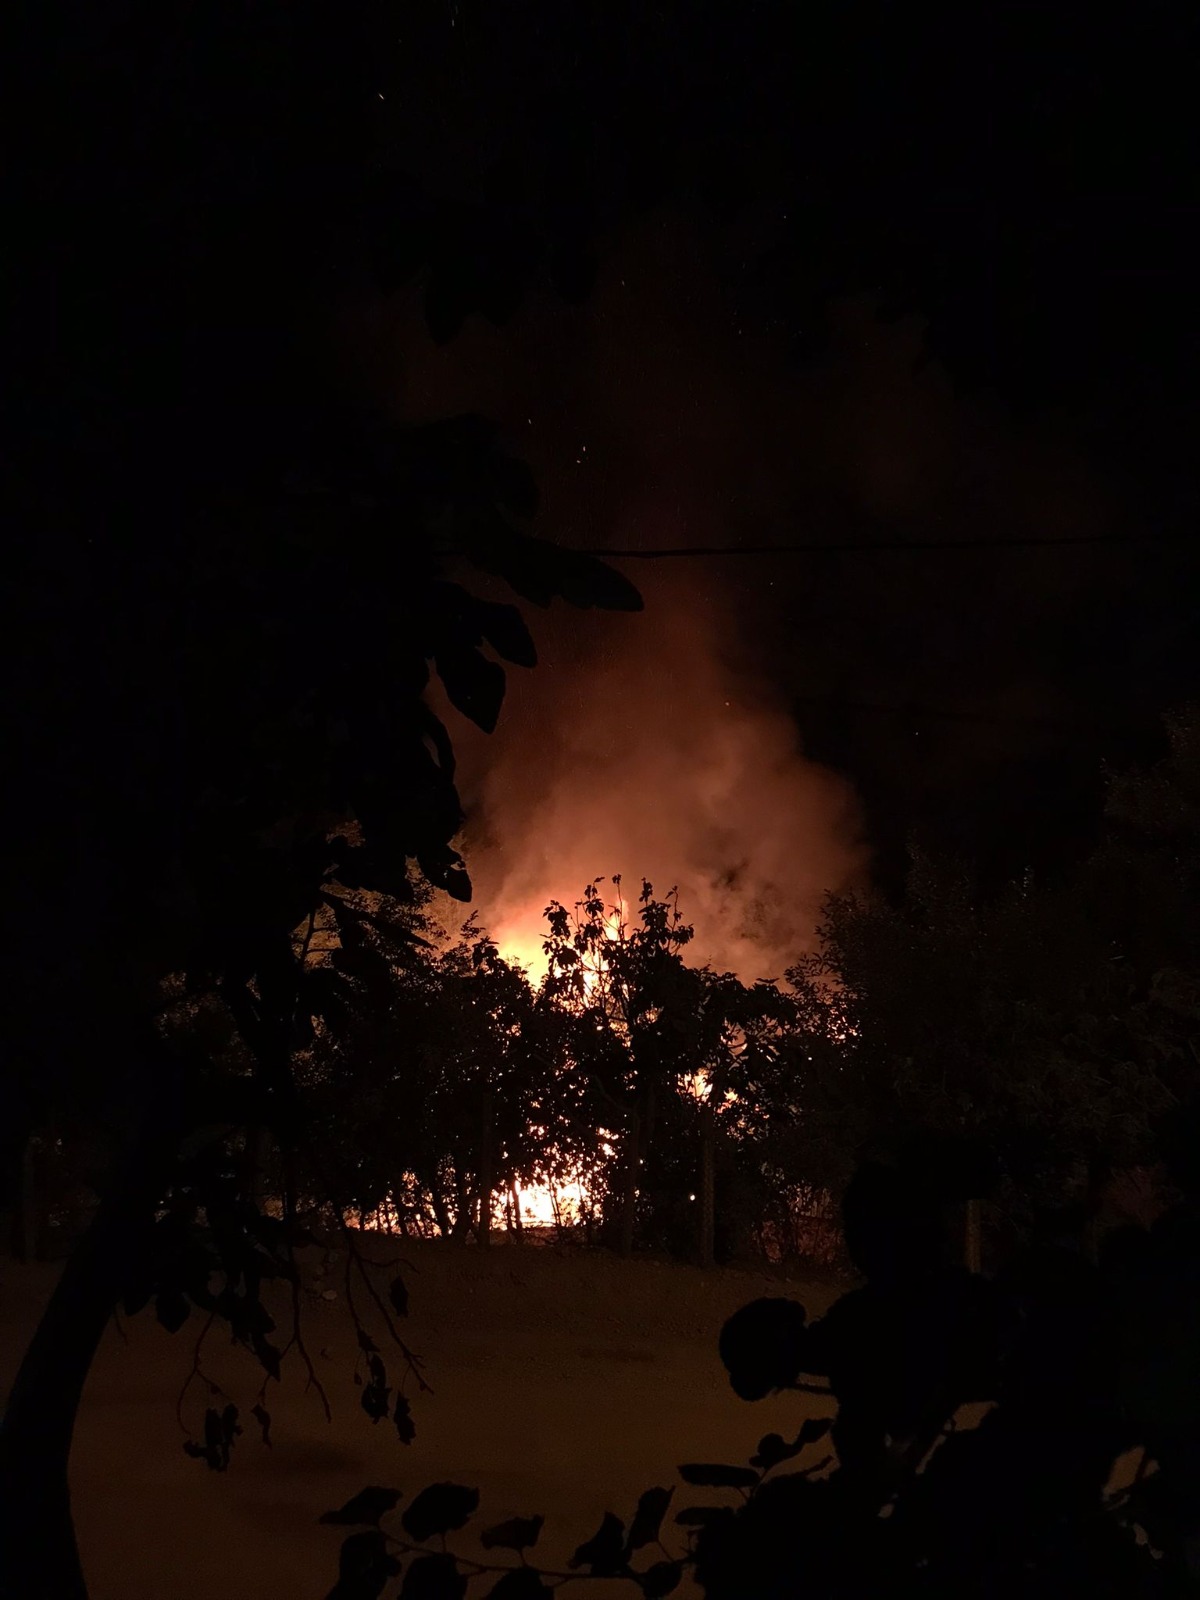 Adana'da yangın çıkan ev kullanılamaz hale geldi